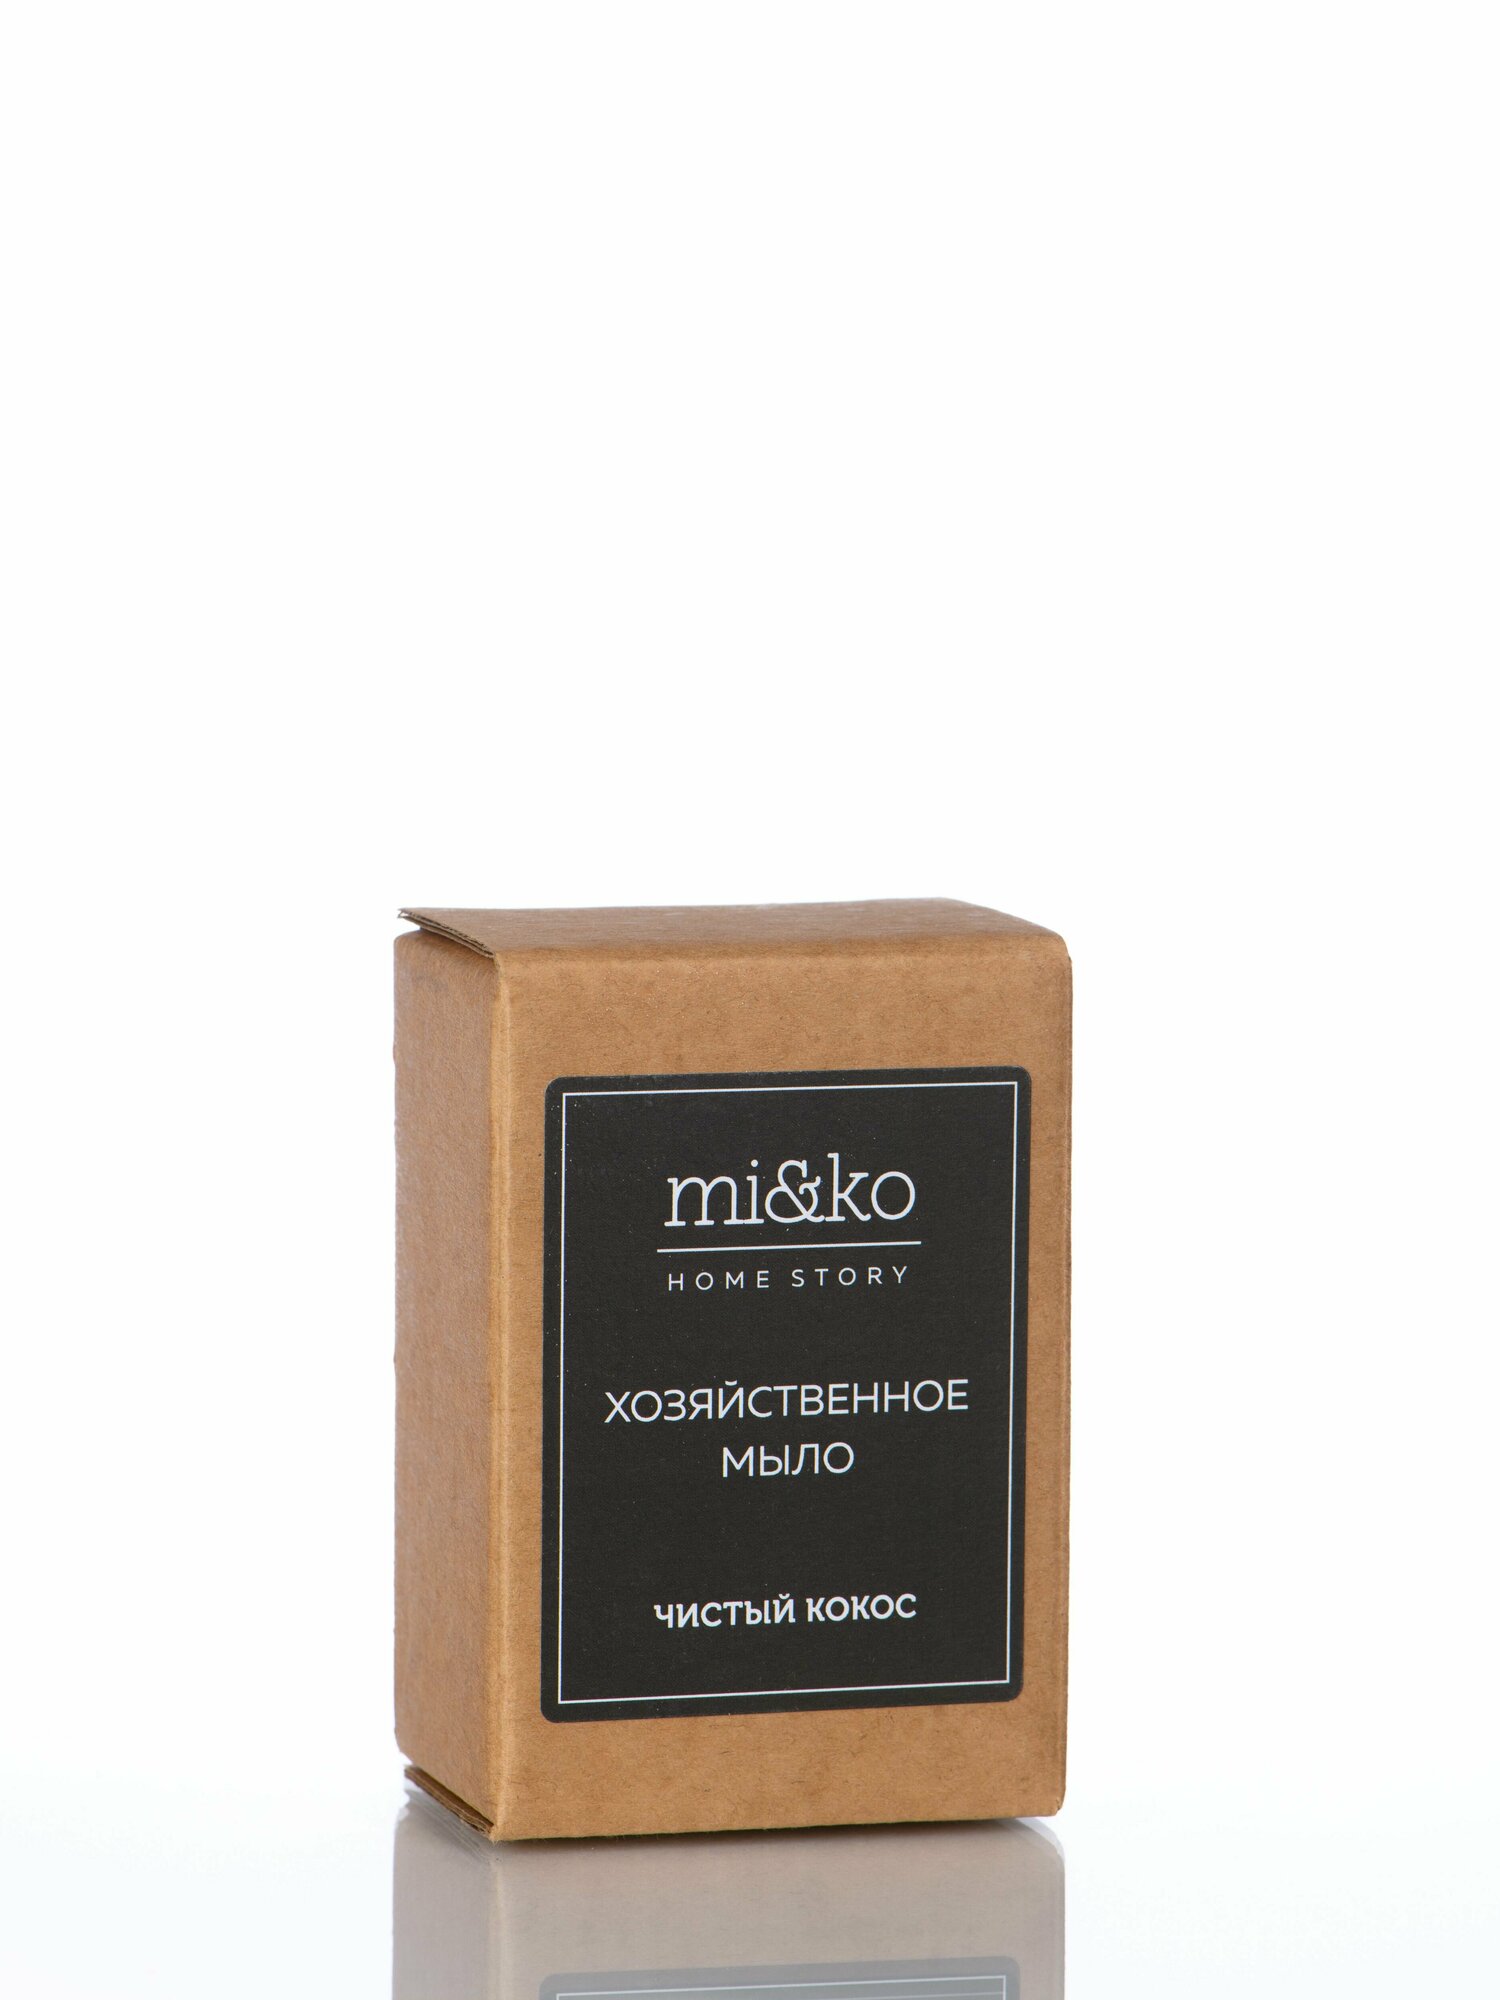 MI&KO Хозяйственное мыло Чистый кокос, 0.18 кг